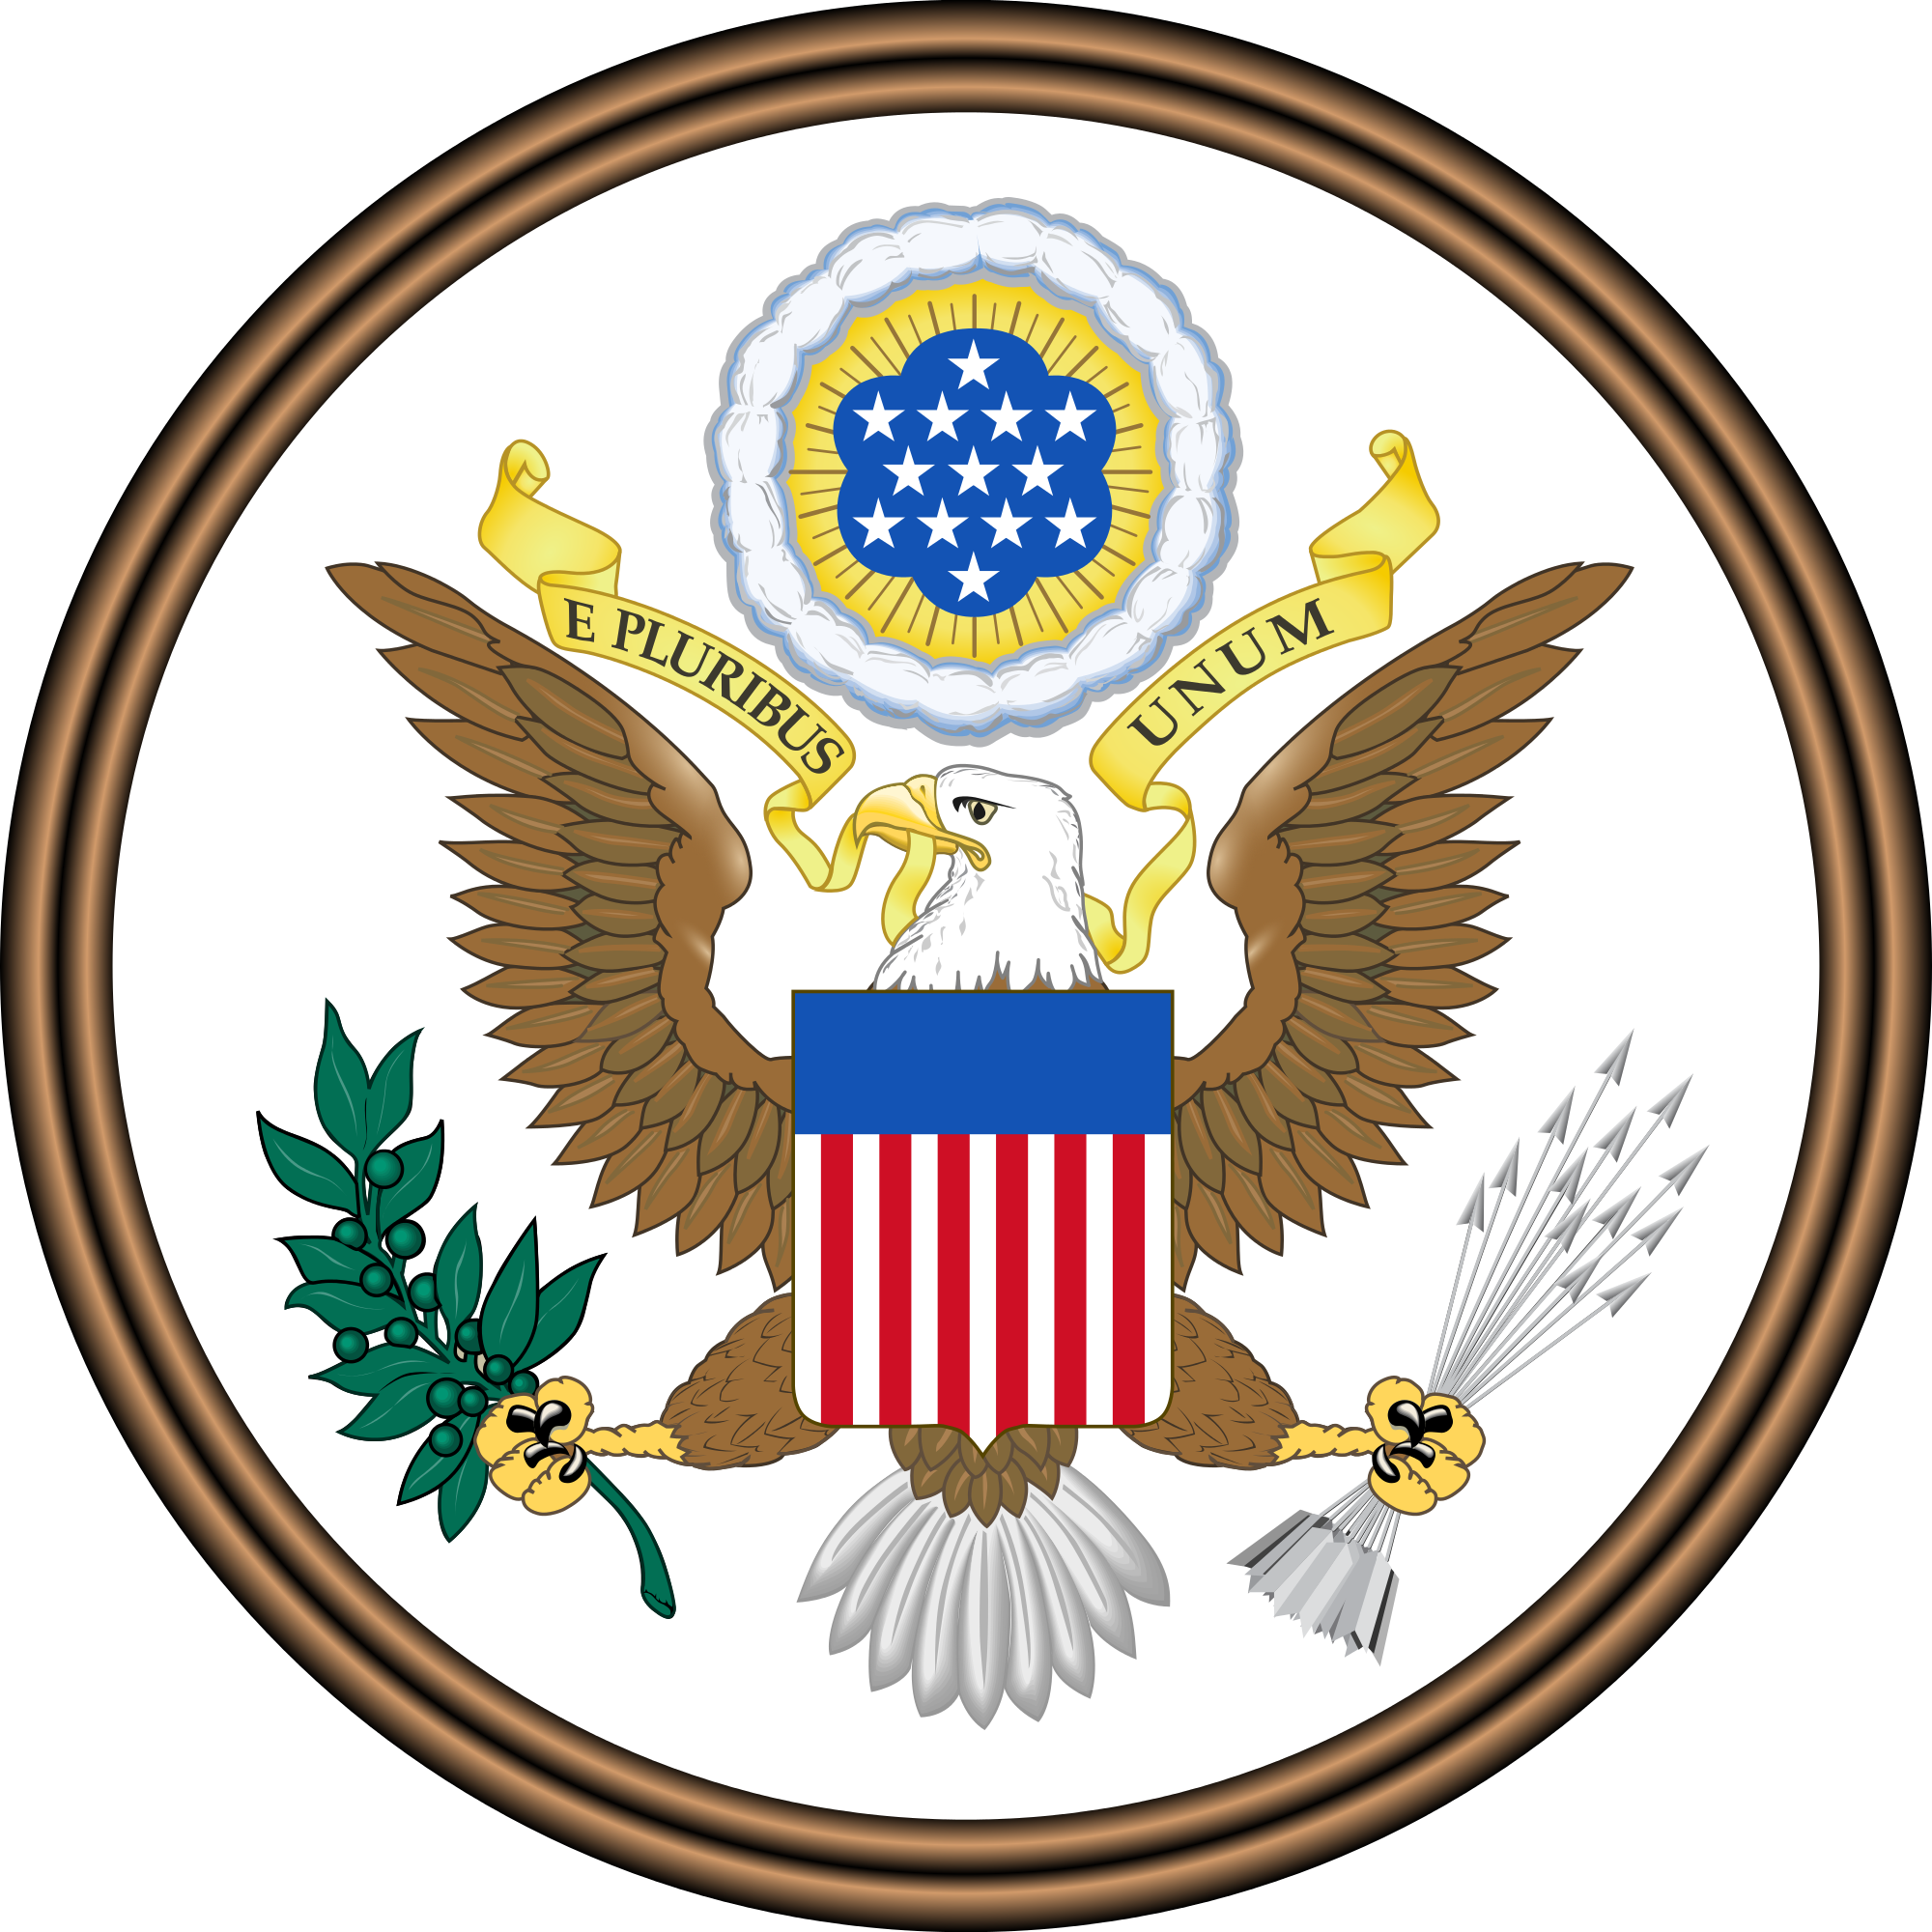 Nationales Emblem der USA